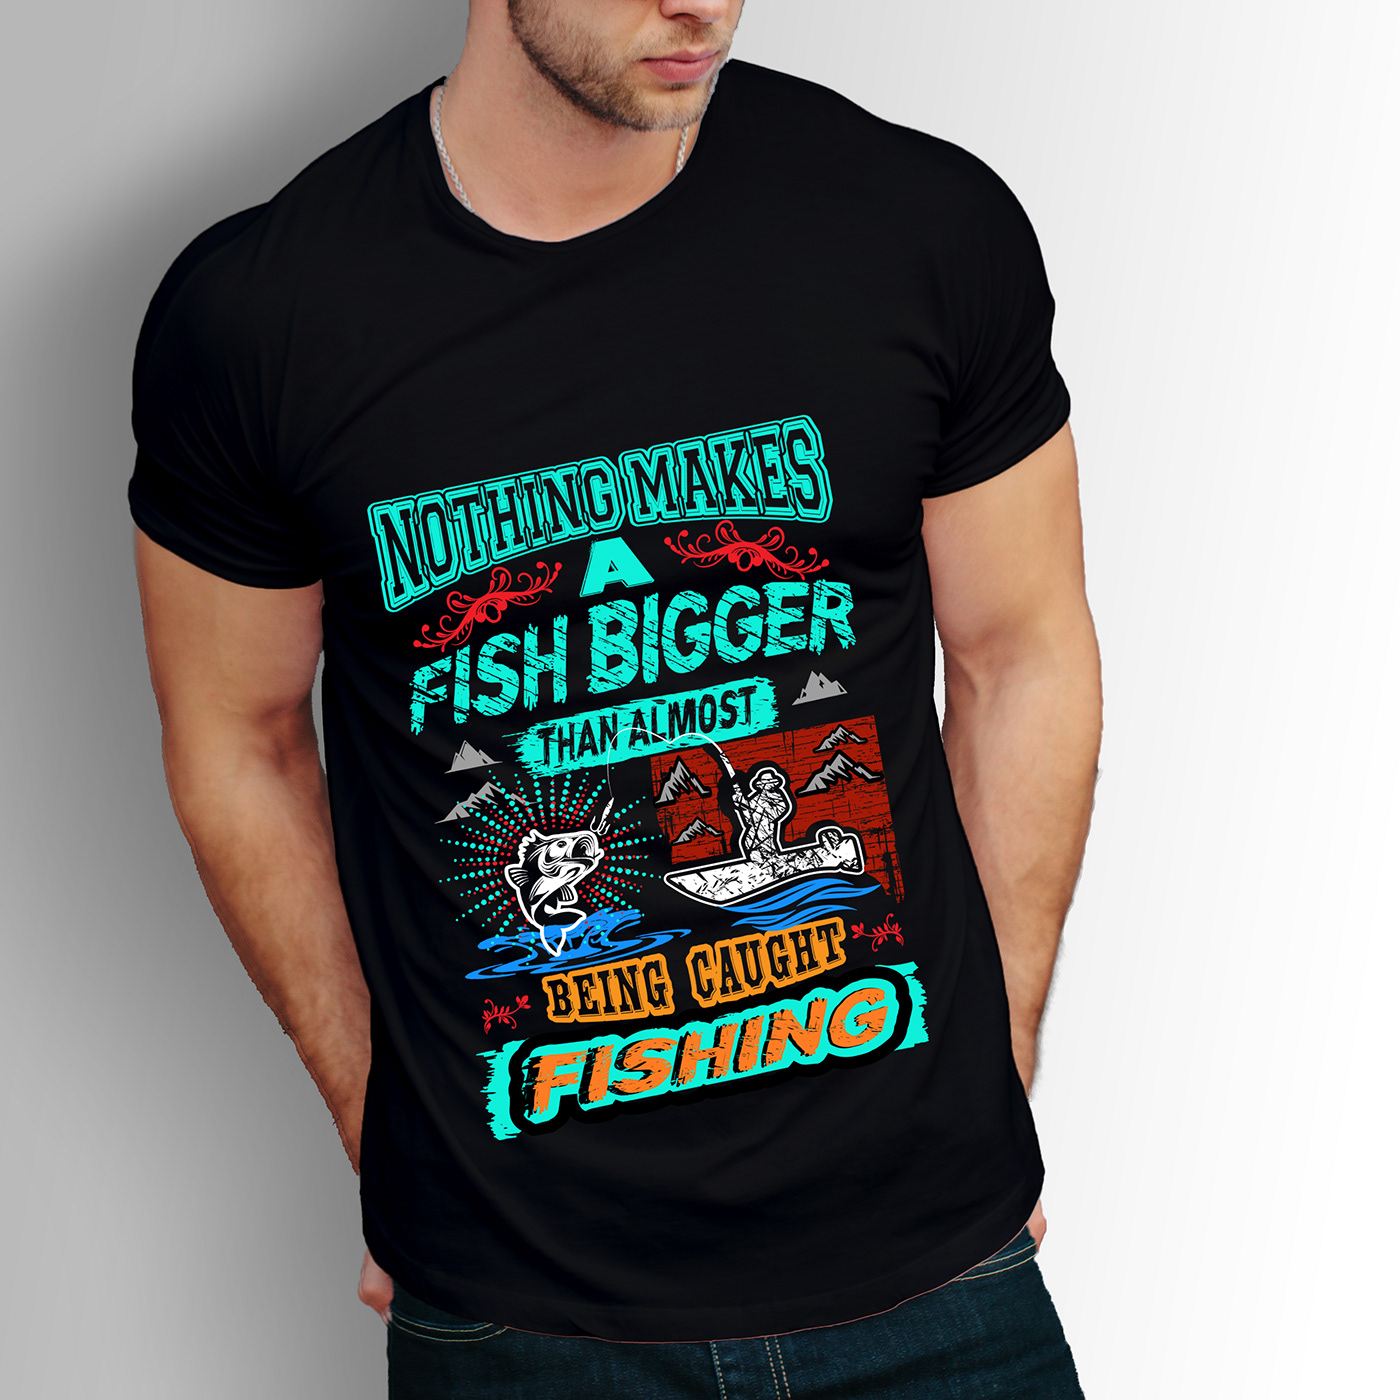 fishing t-shirt t-shirt Fishing T-Shirt Designs Funny Fishing T-Shirts fishing t-shirts amazon bulk t-shirt design custom t-shirt design cat t-sshirt